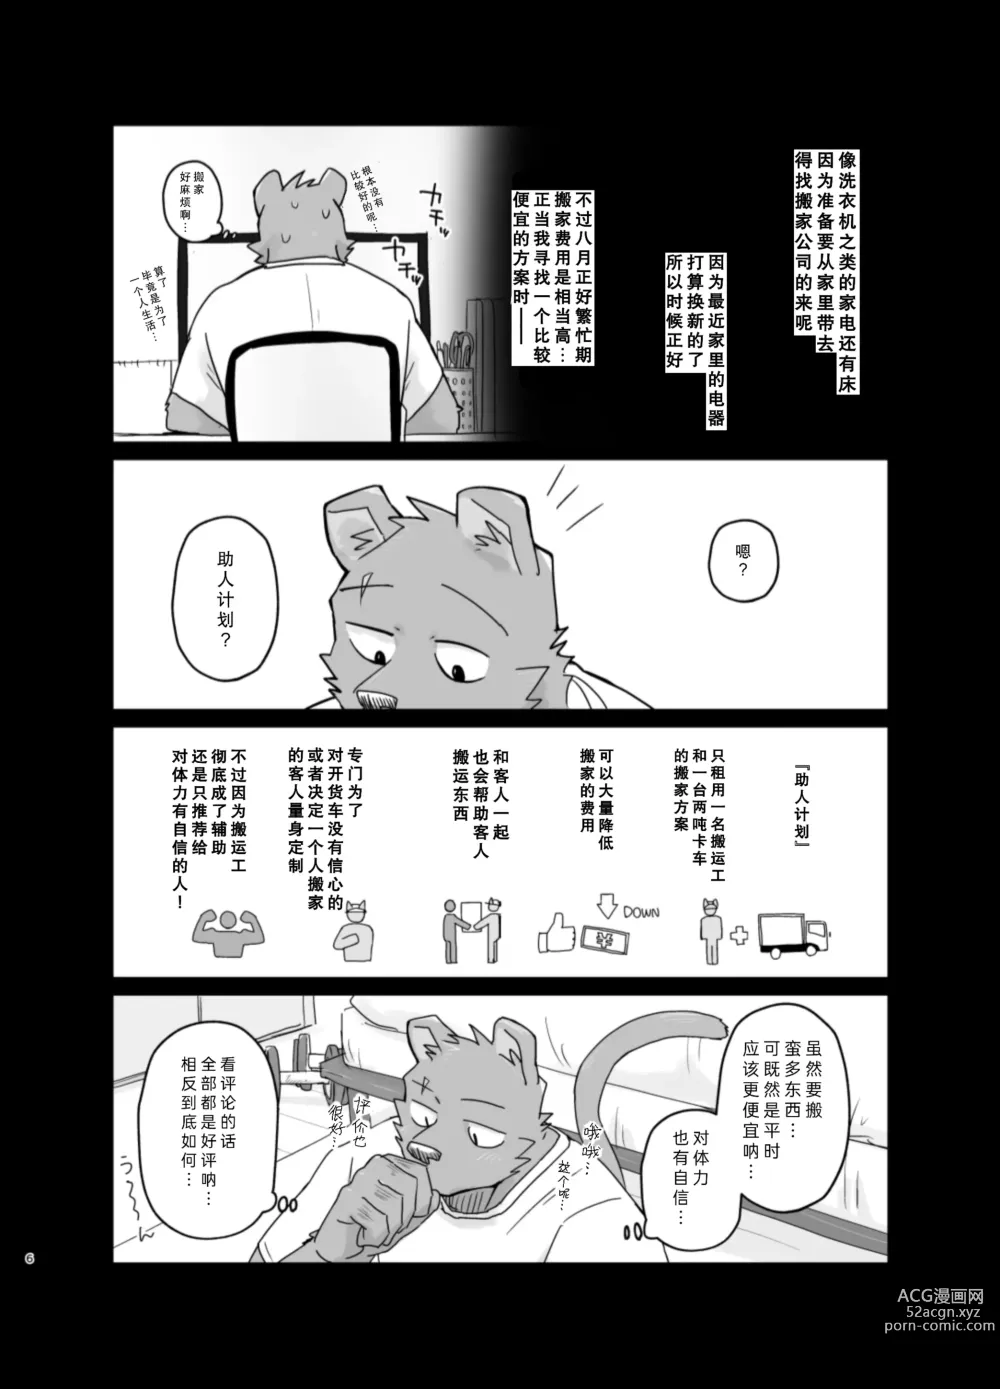 Page 6 of doujinshi 搬家的十分钟服务